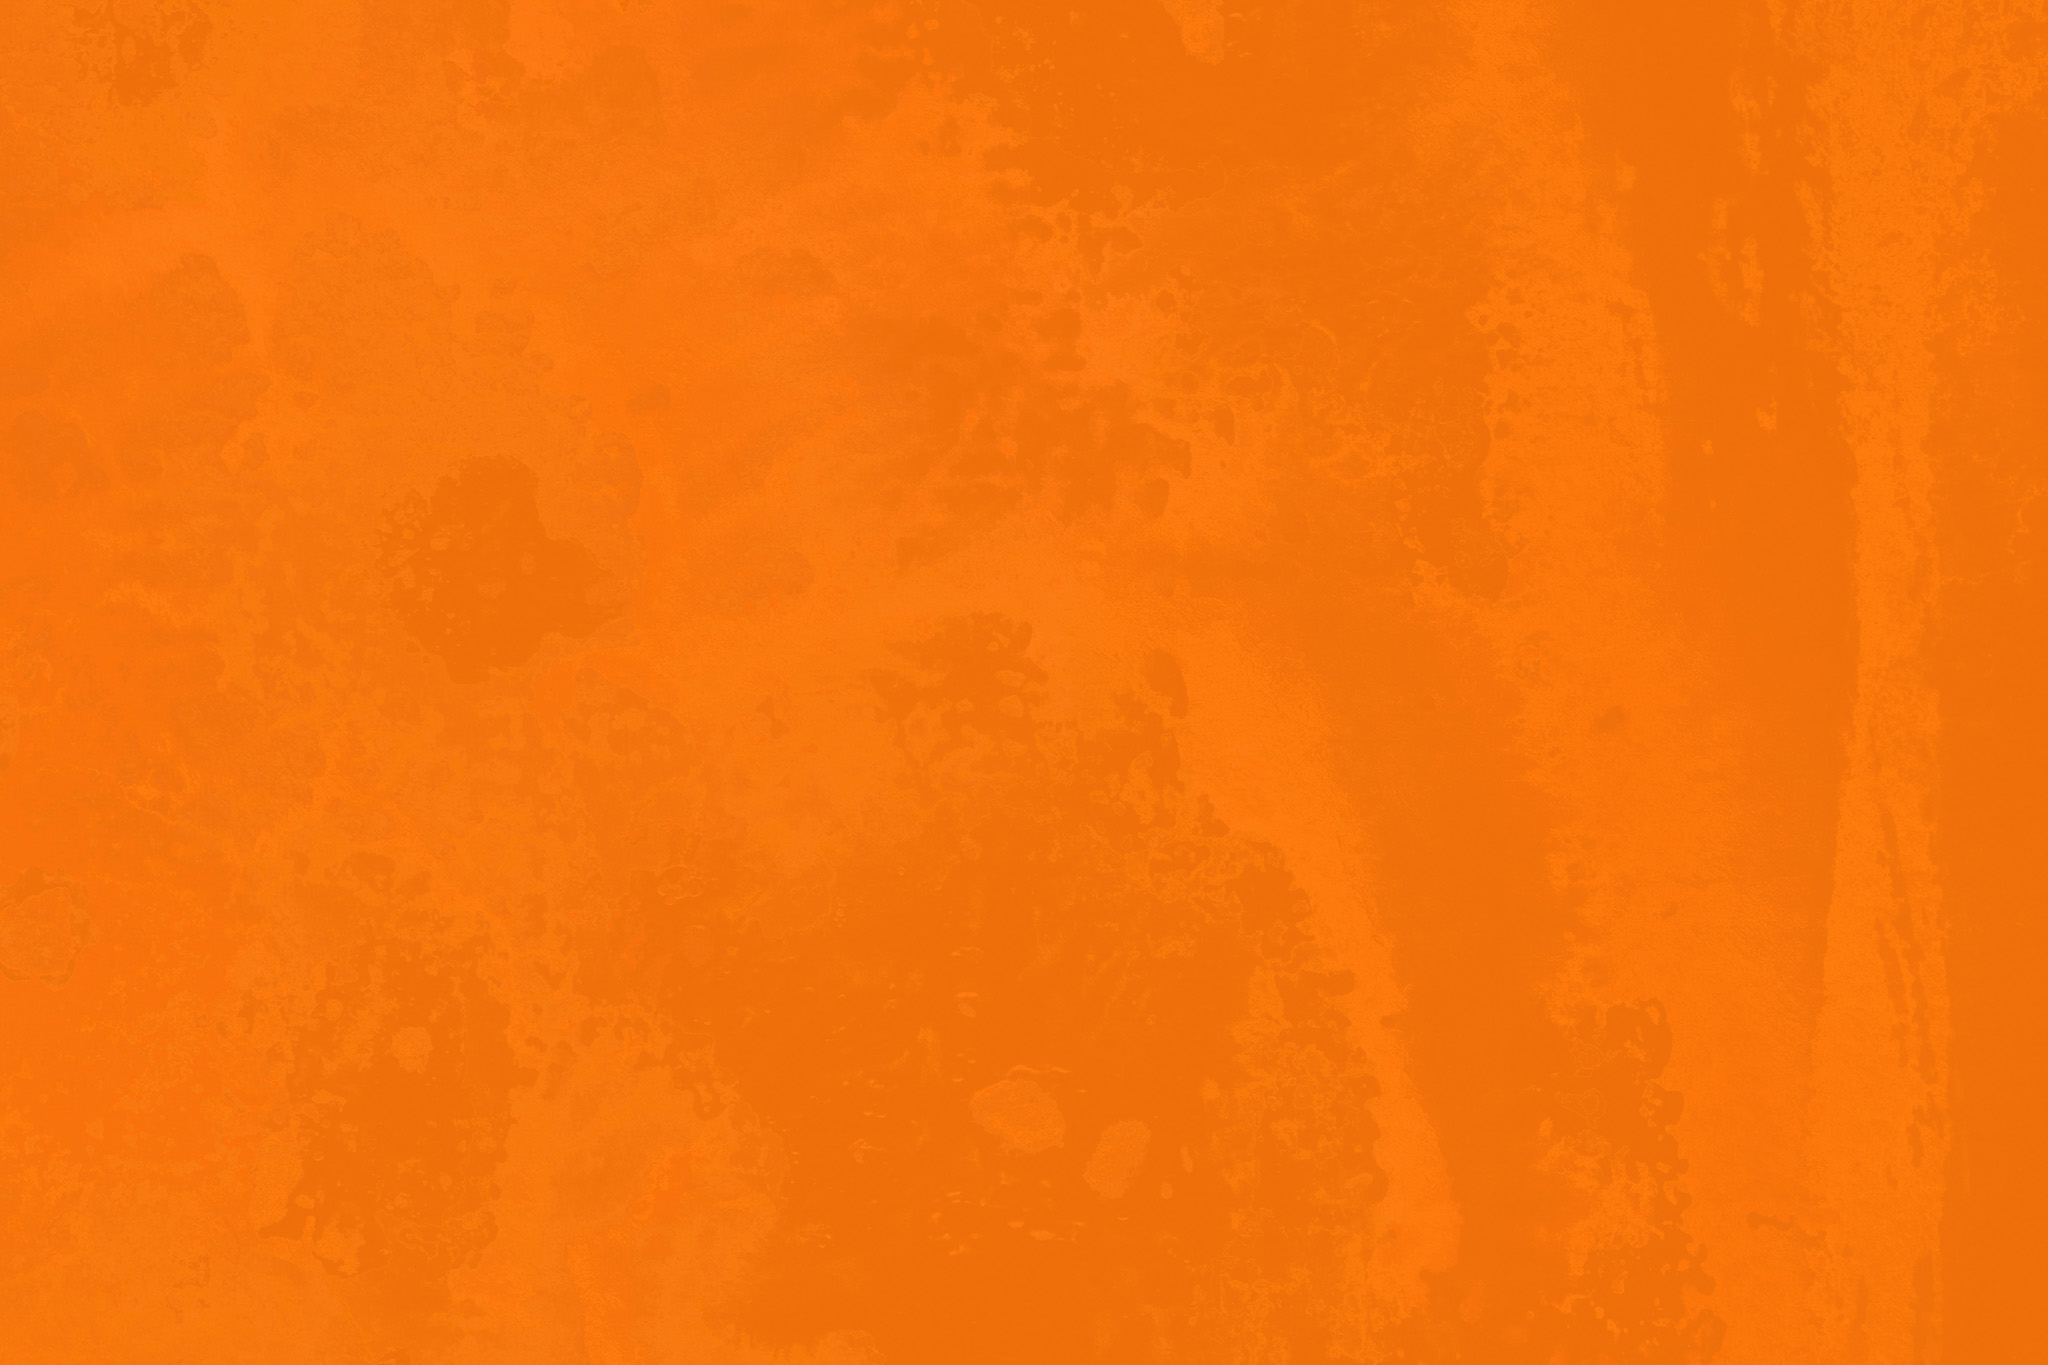 おしゃれなオレンジ色の無地壁紙 の画像素材を無料ダウンロード 1 フリー素材 Beiz Images